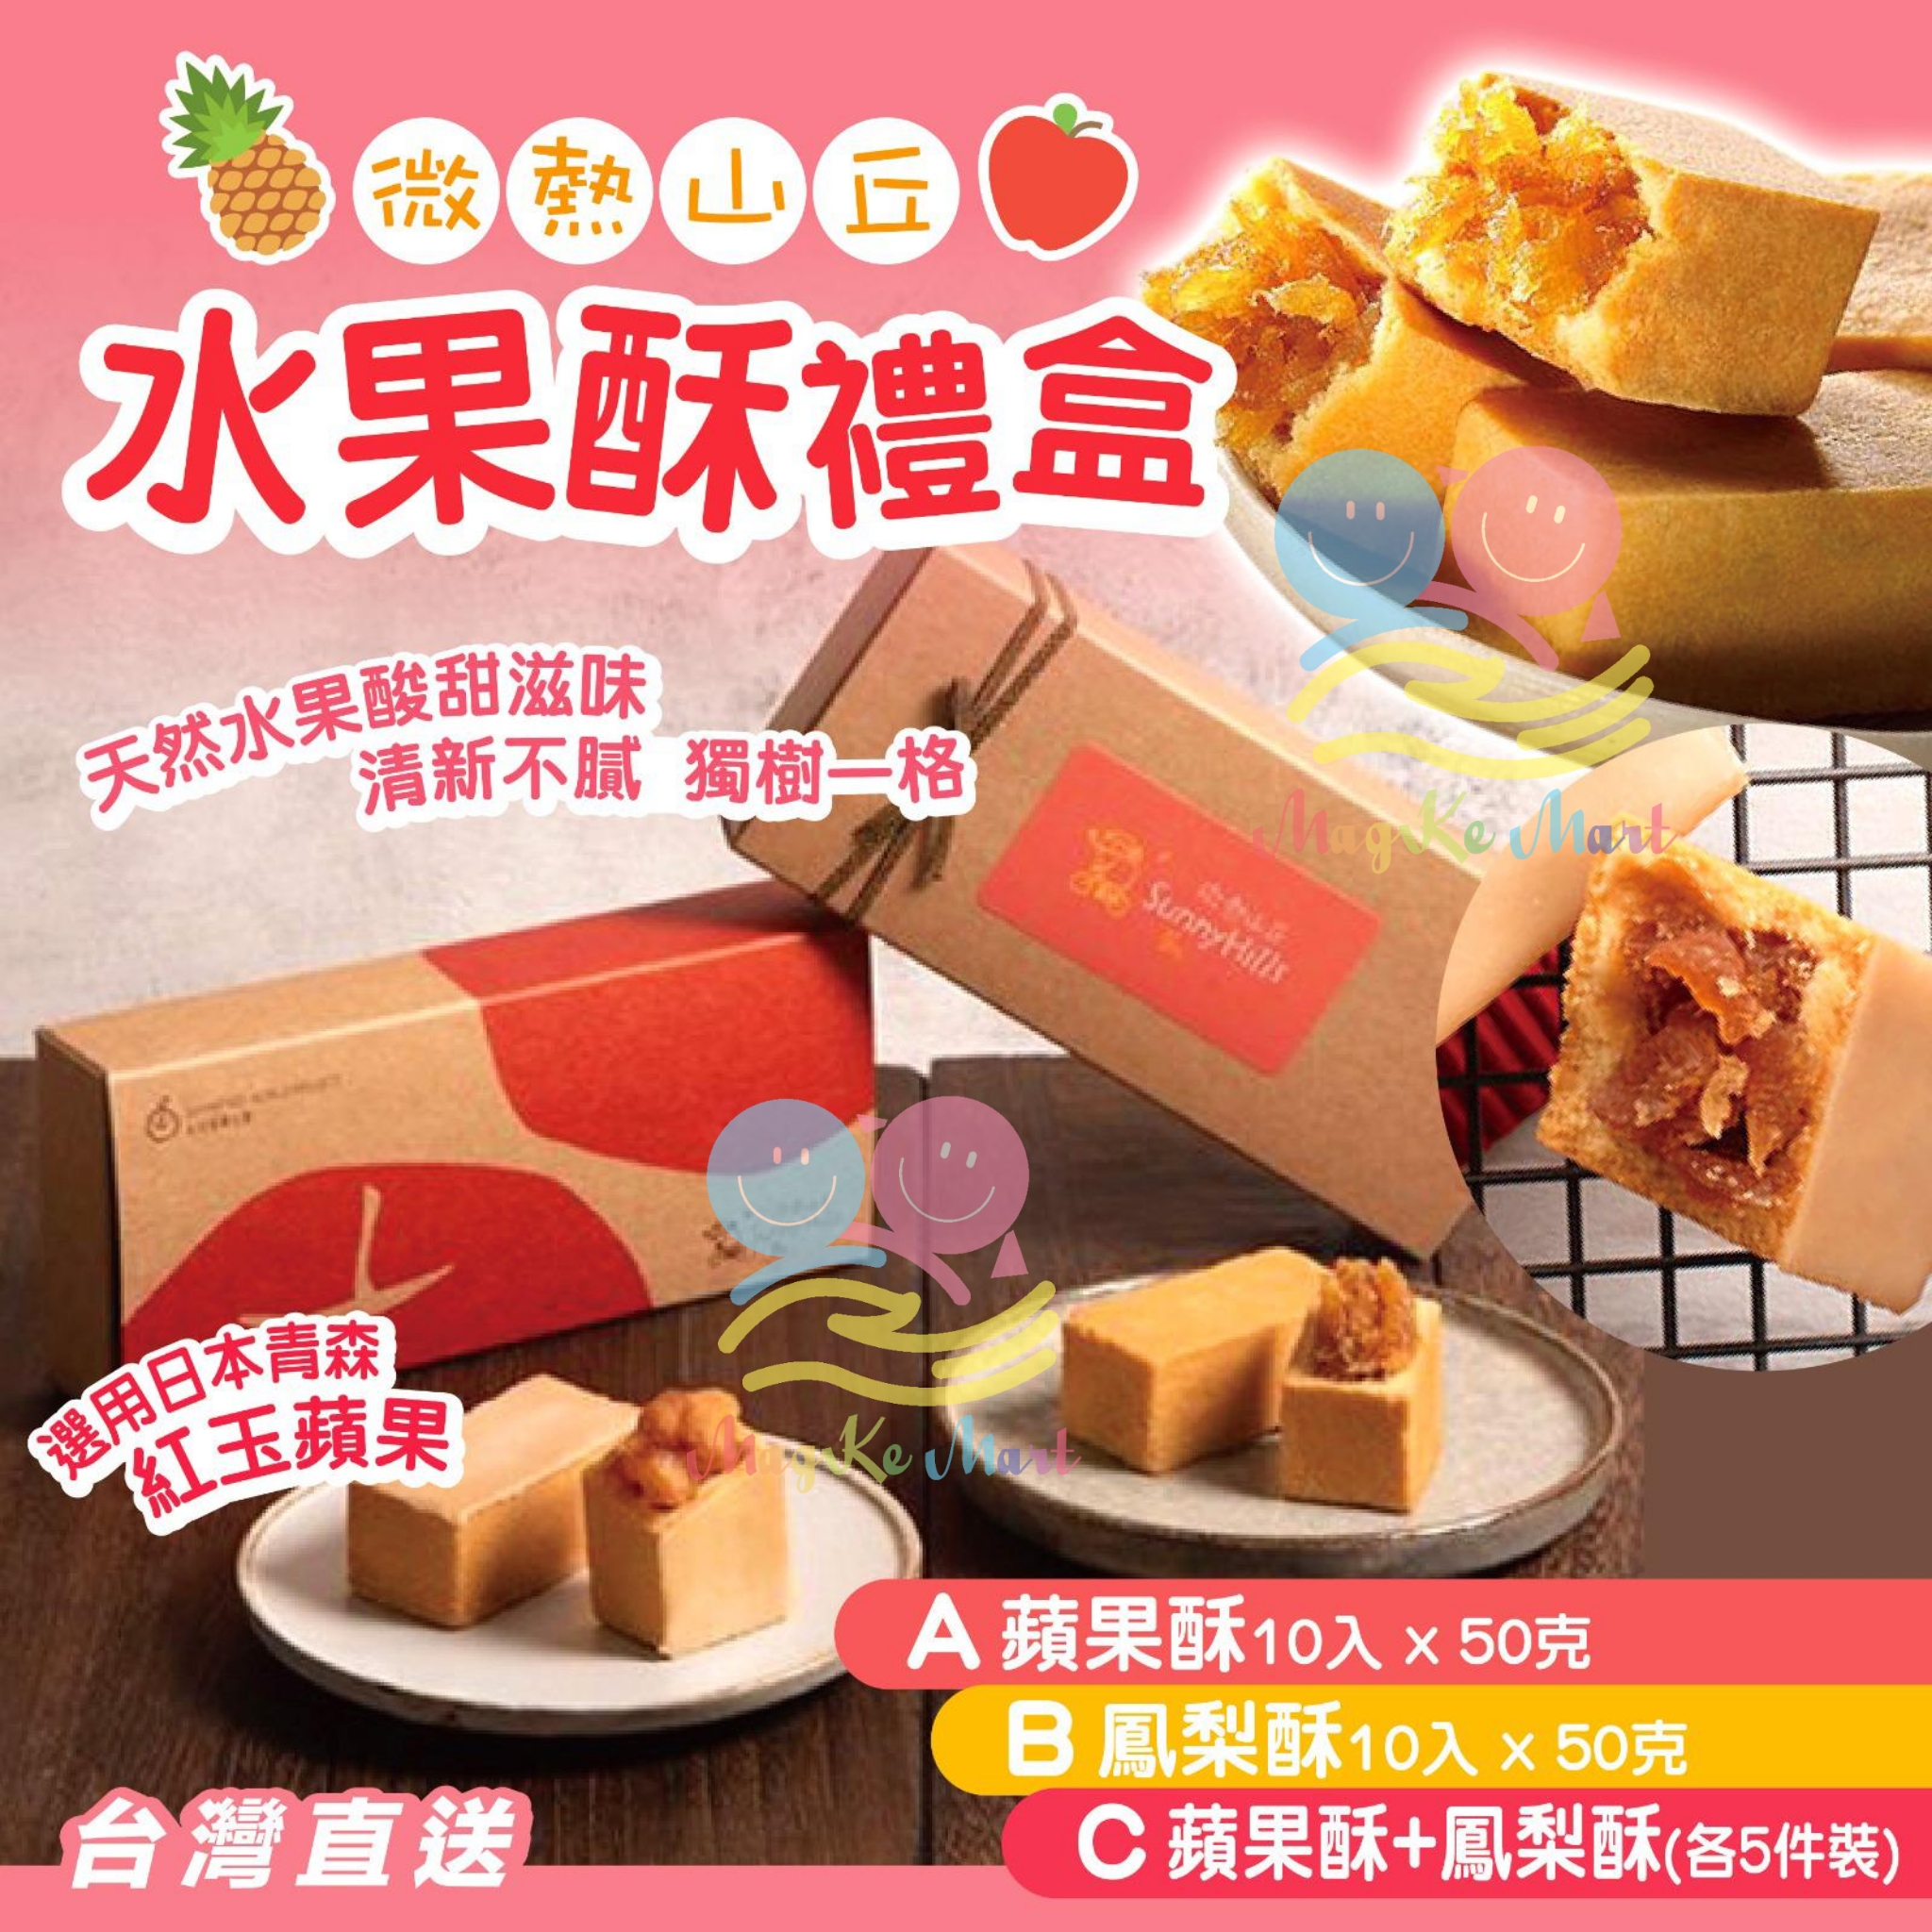 台灣微熱山丘水果酥禮盒(1盒10件)